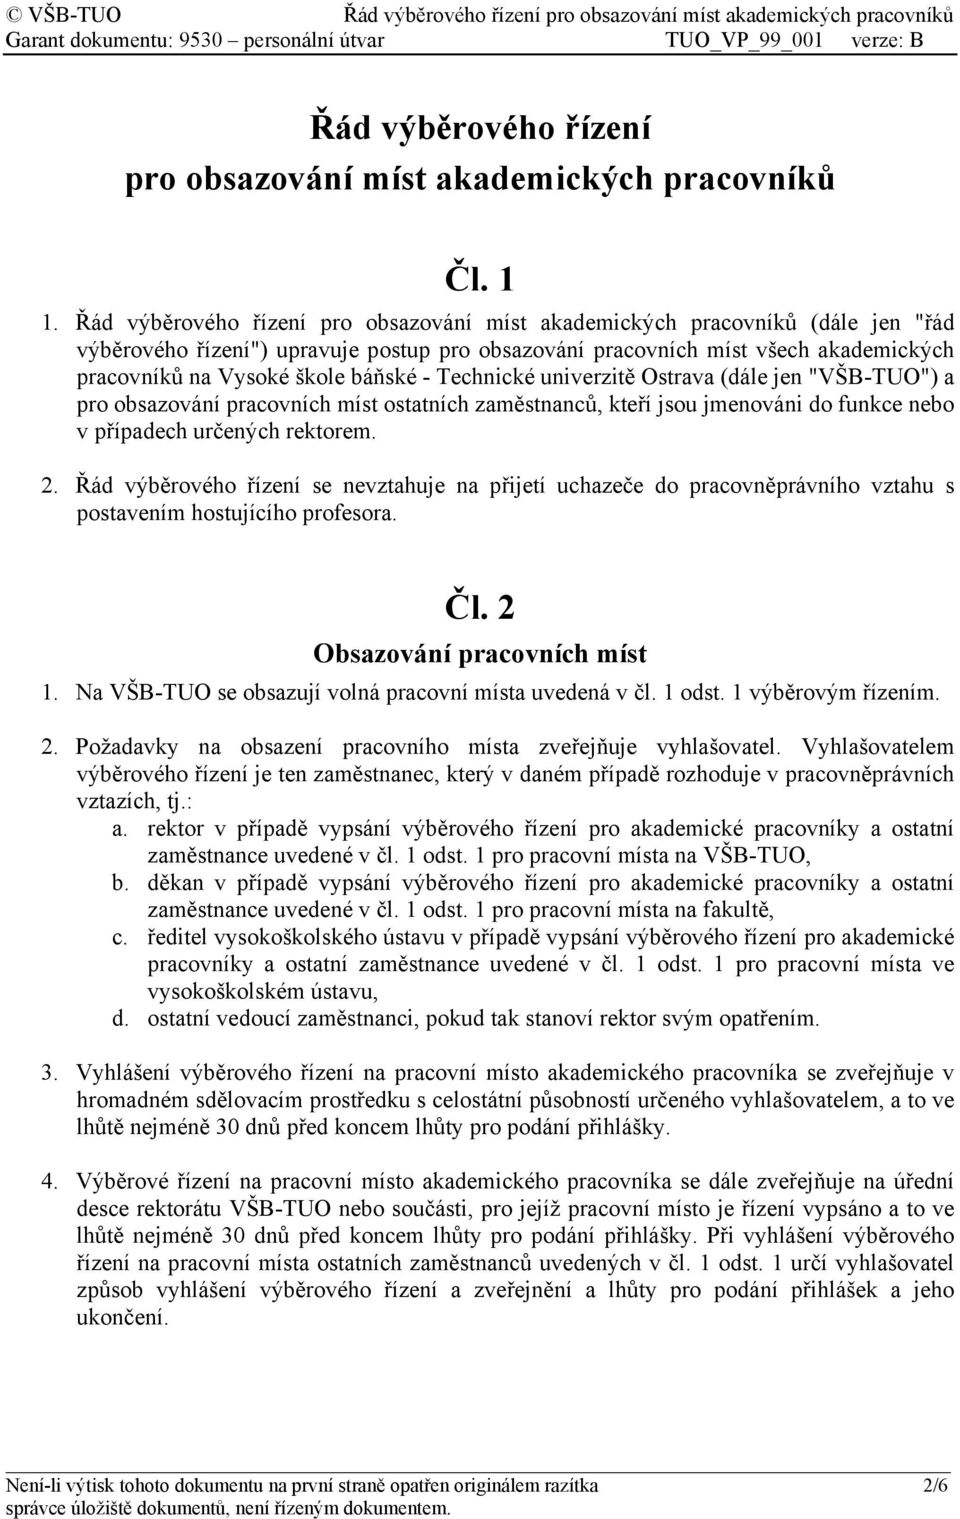 báňské - Technické univerzitě Ostrava (dále jen "VŠB-TUO") a pro obsazování pracovních míst ostatních zaměstnanců, kteří jsou jmenováni do funkce nebo v případech určených rektorem. 2.